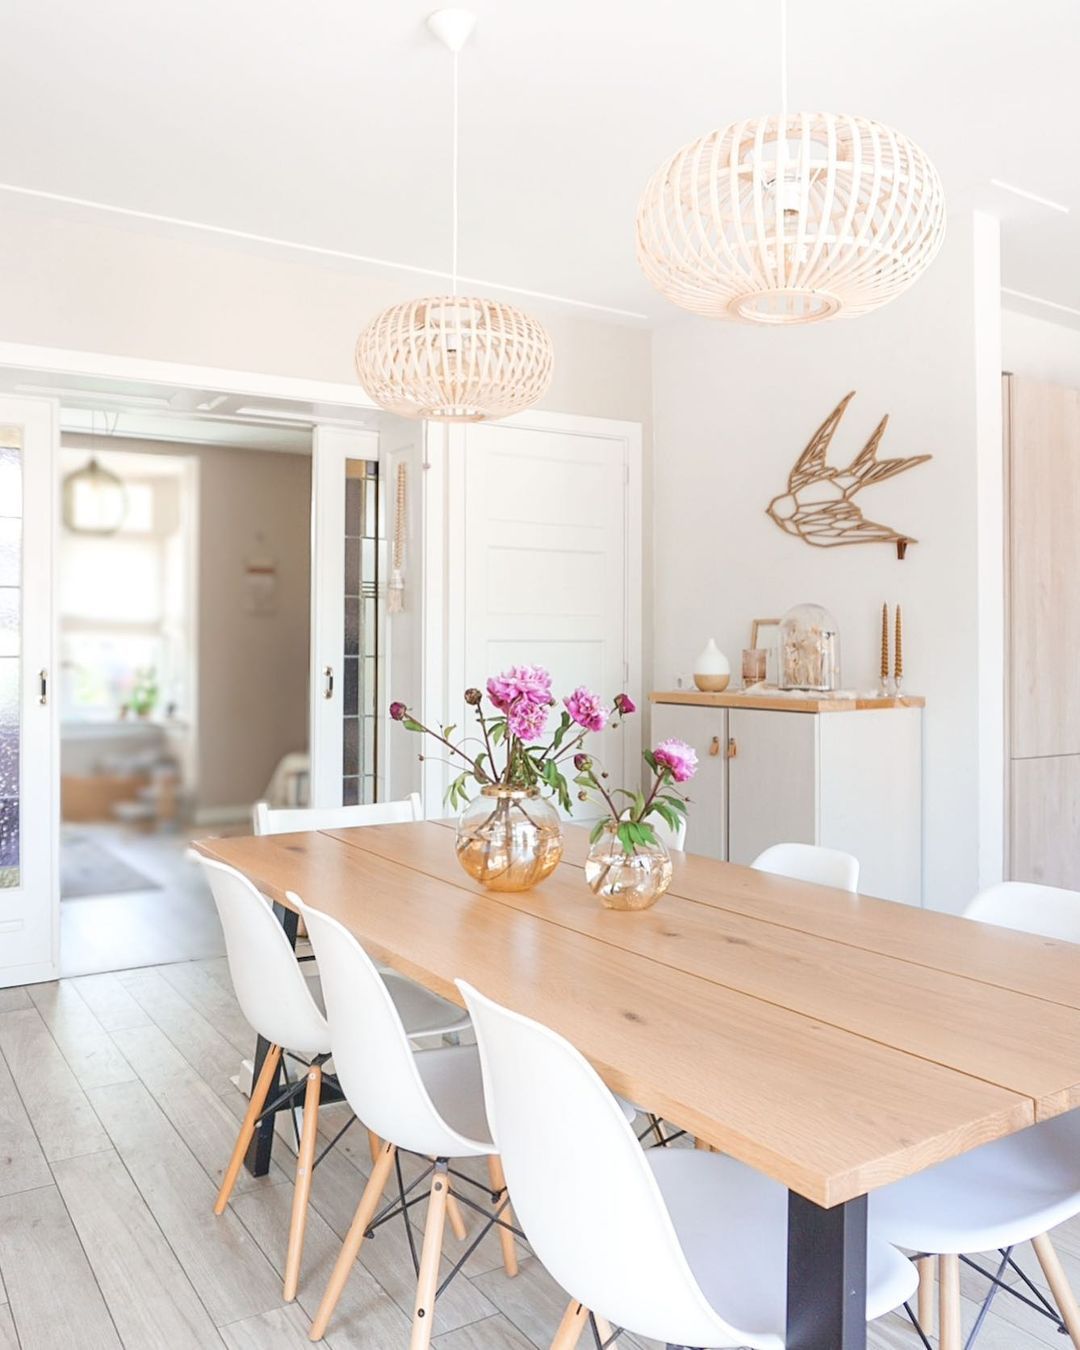 Margaret Mitchell ontwerper Downtown Smalle eettafels in huis voor de perfecte eetkamer - Makeover.nl